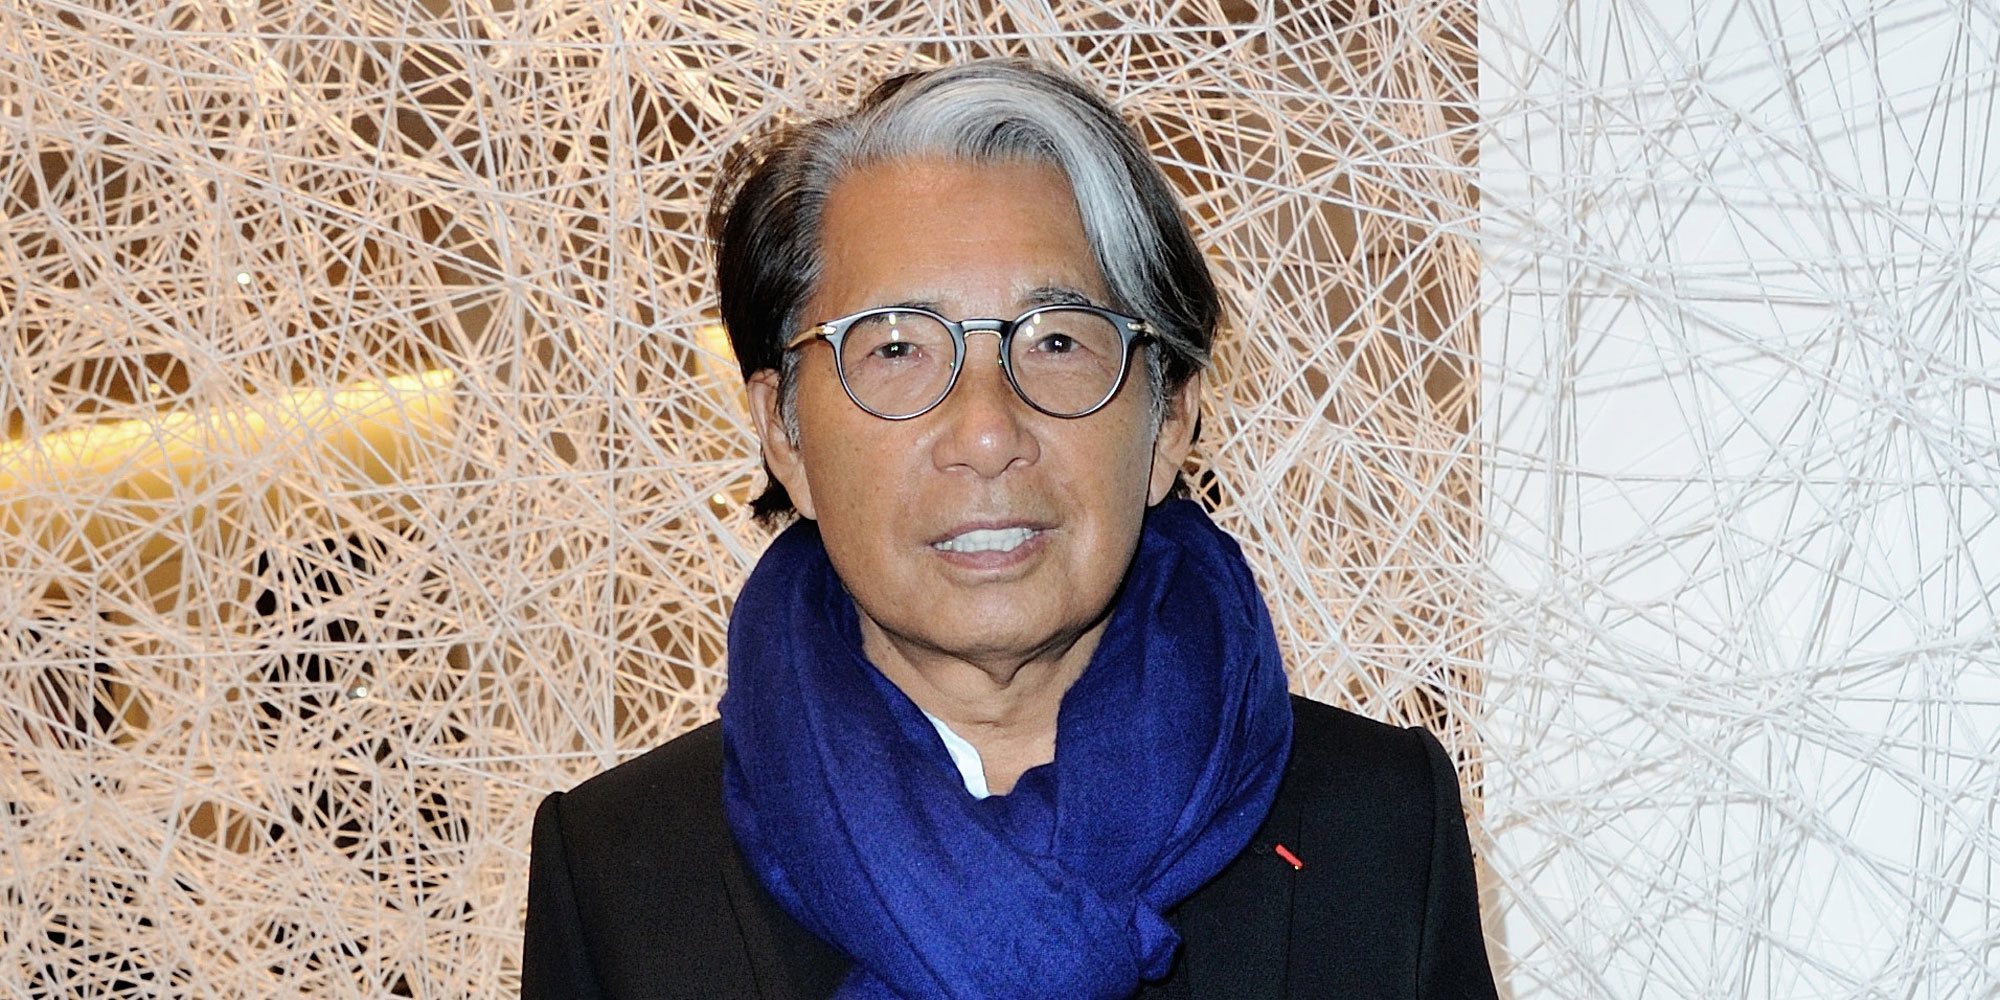 Muere el diseñador japonés Kenzo Takada por coronavirus a los 81 años